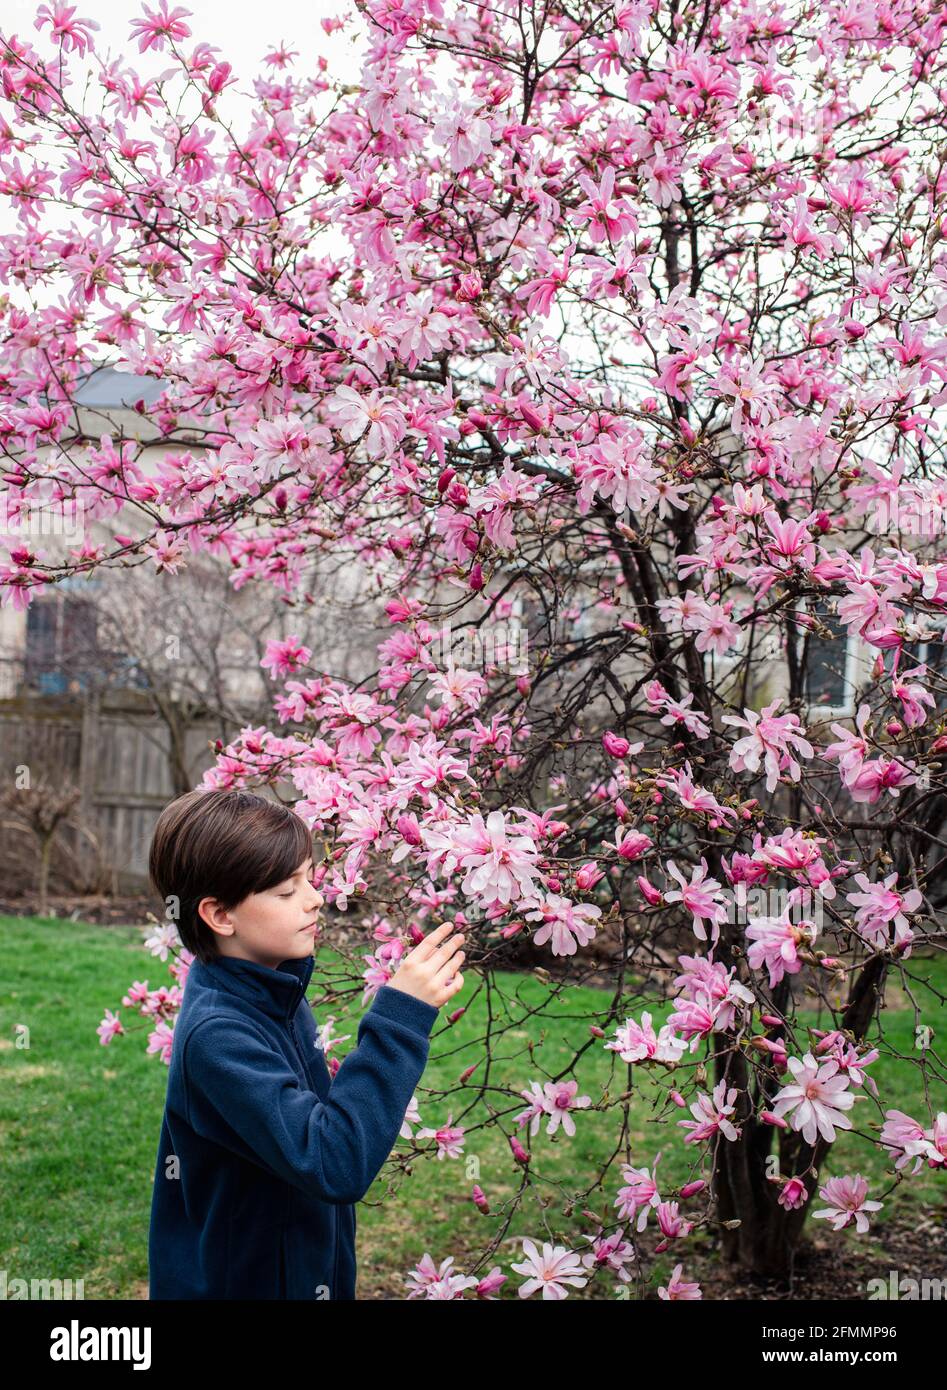 Jeune garçon regardant des fleurs roses sur un magnolia le jour du printemps. Banque D'Images